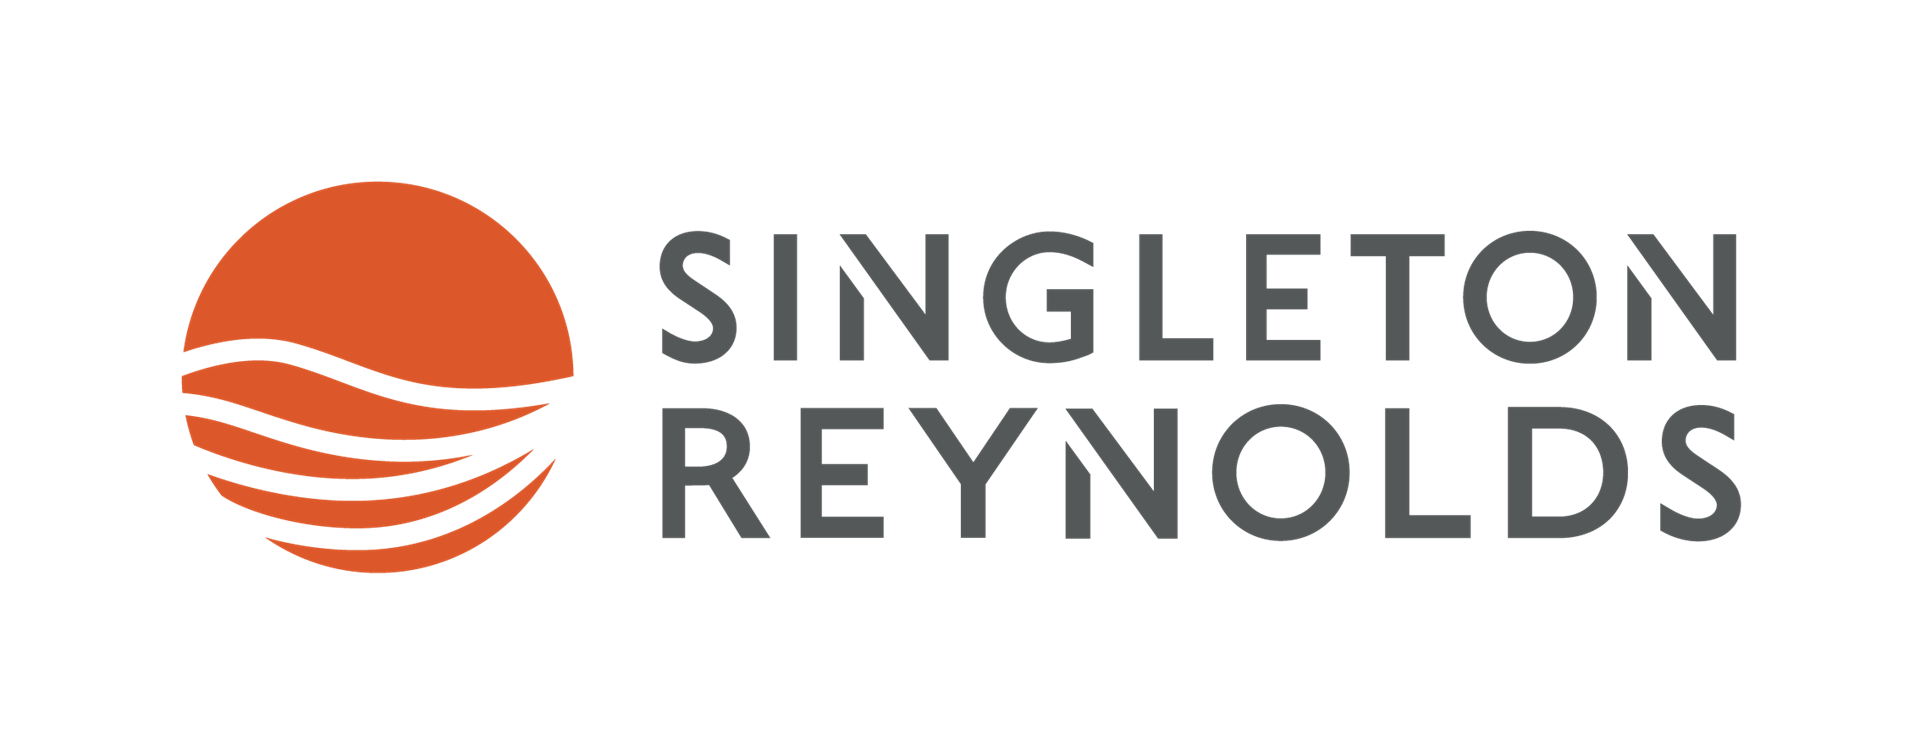 Singleton Reynolds